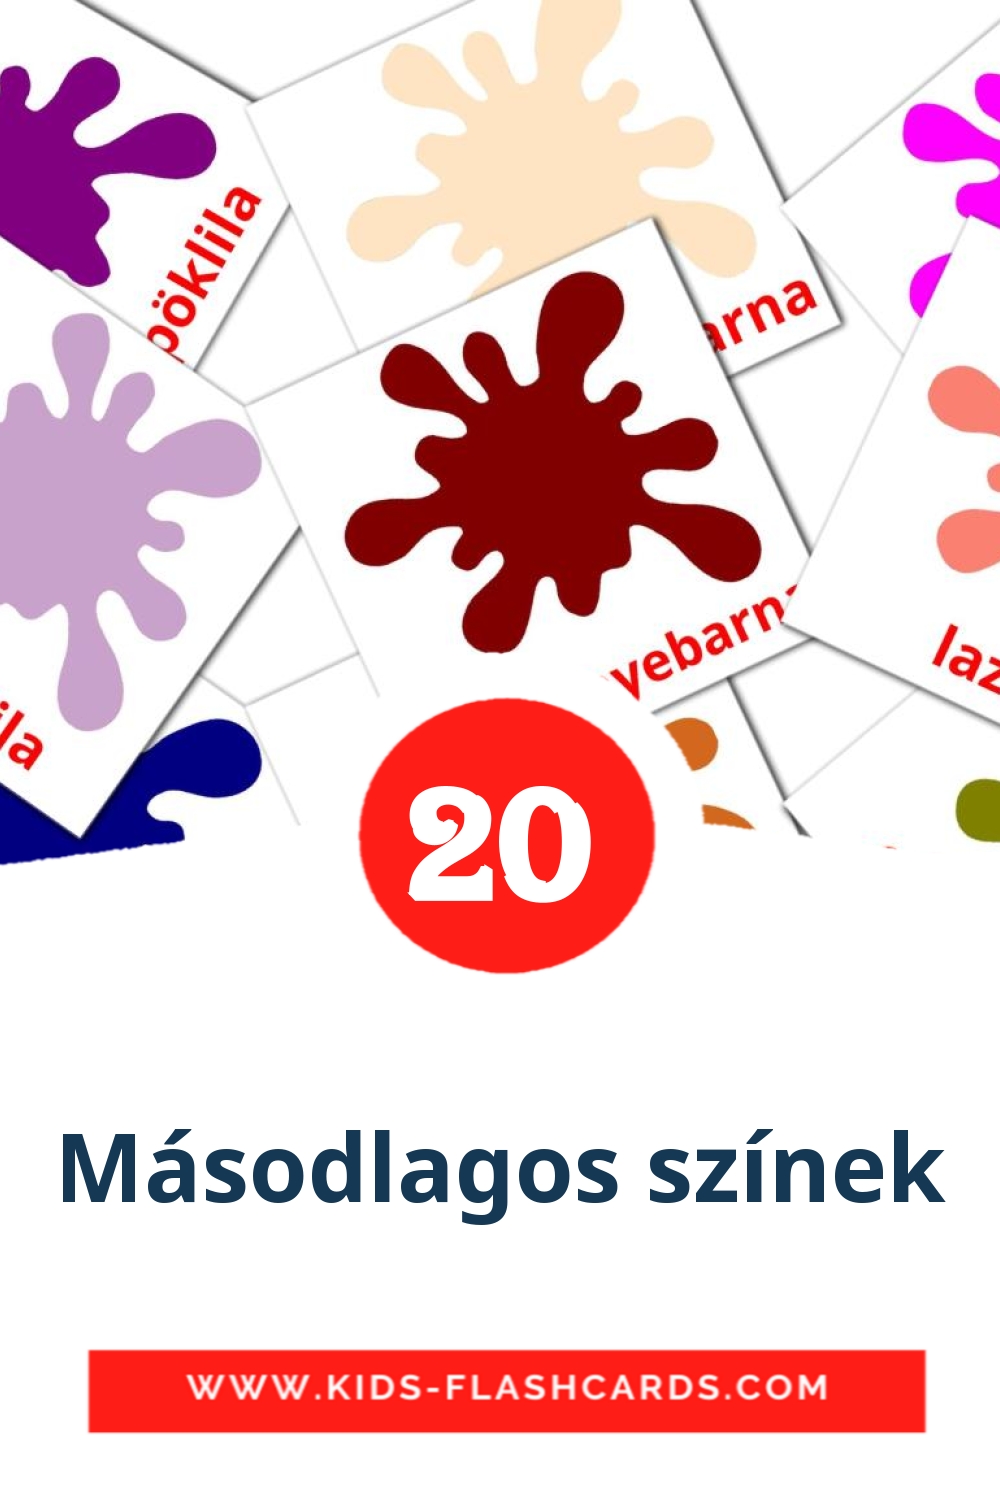 20 cartes illustrées de Másodlagos színek pour la maternelle en hongrois